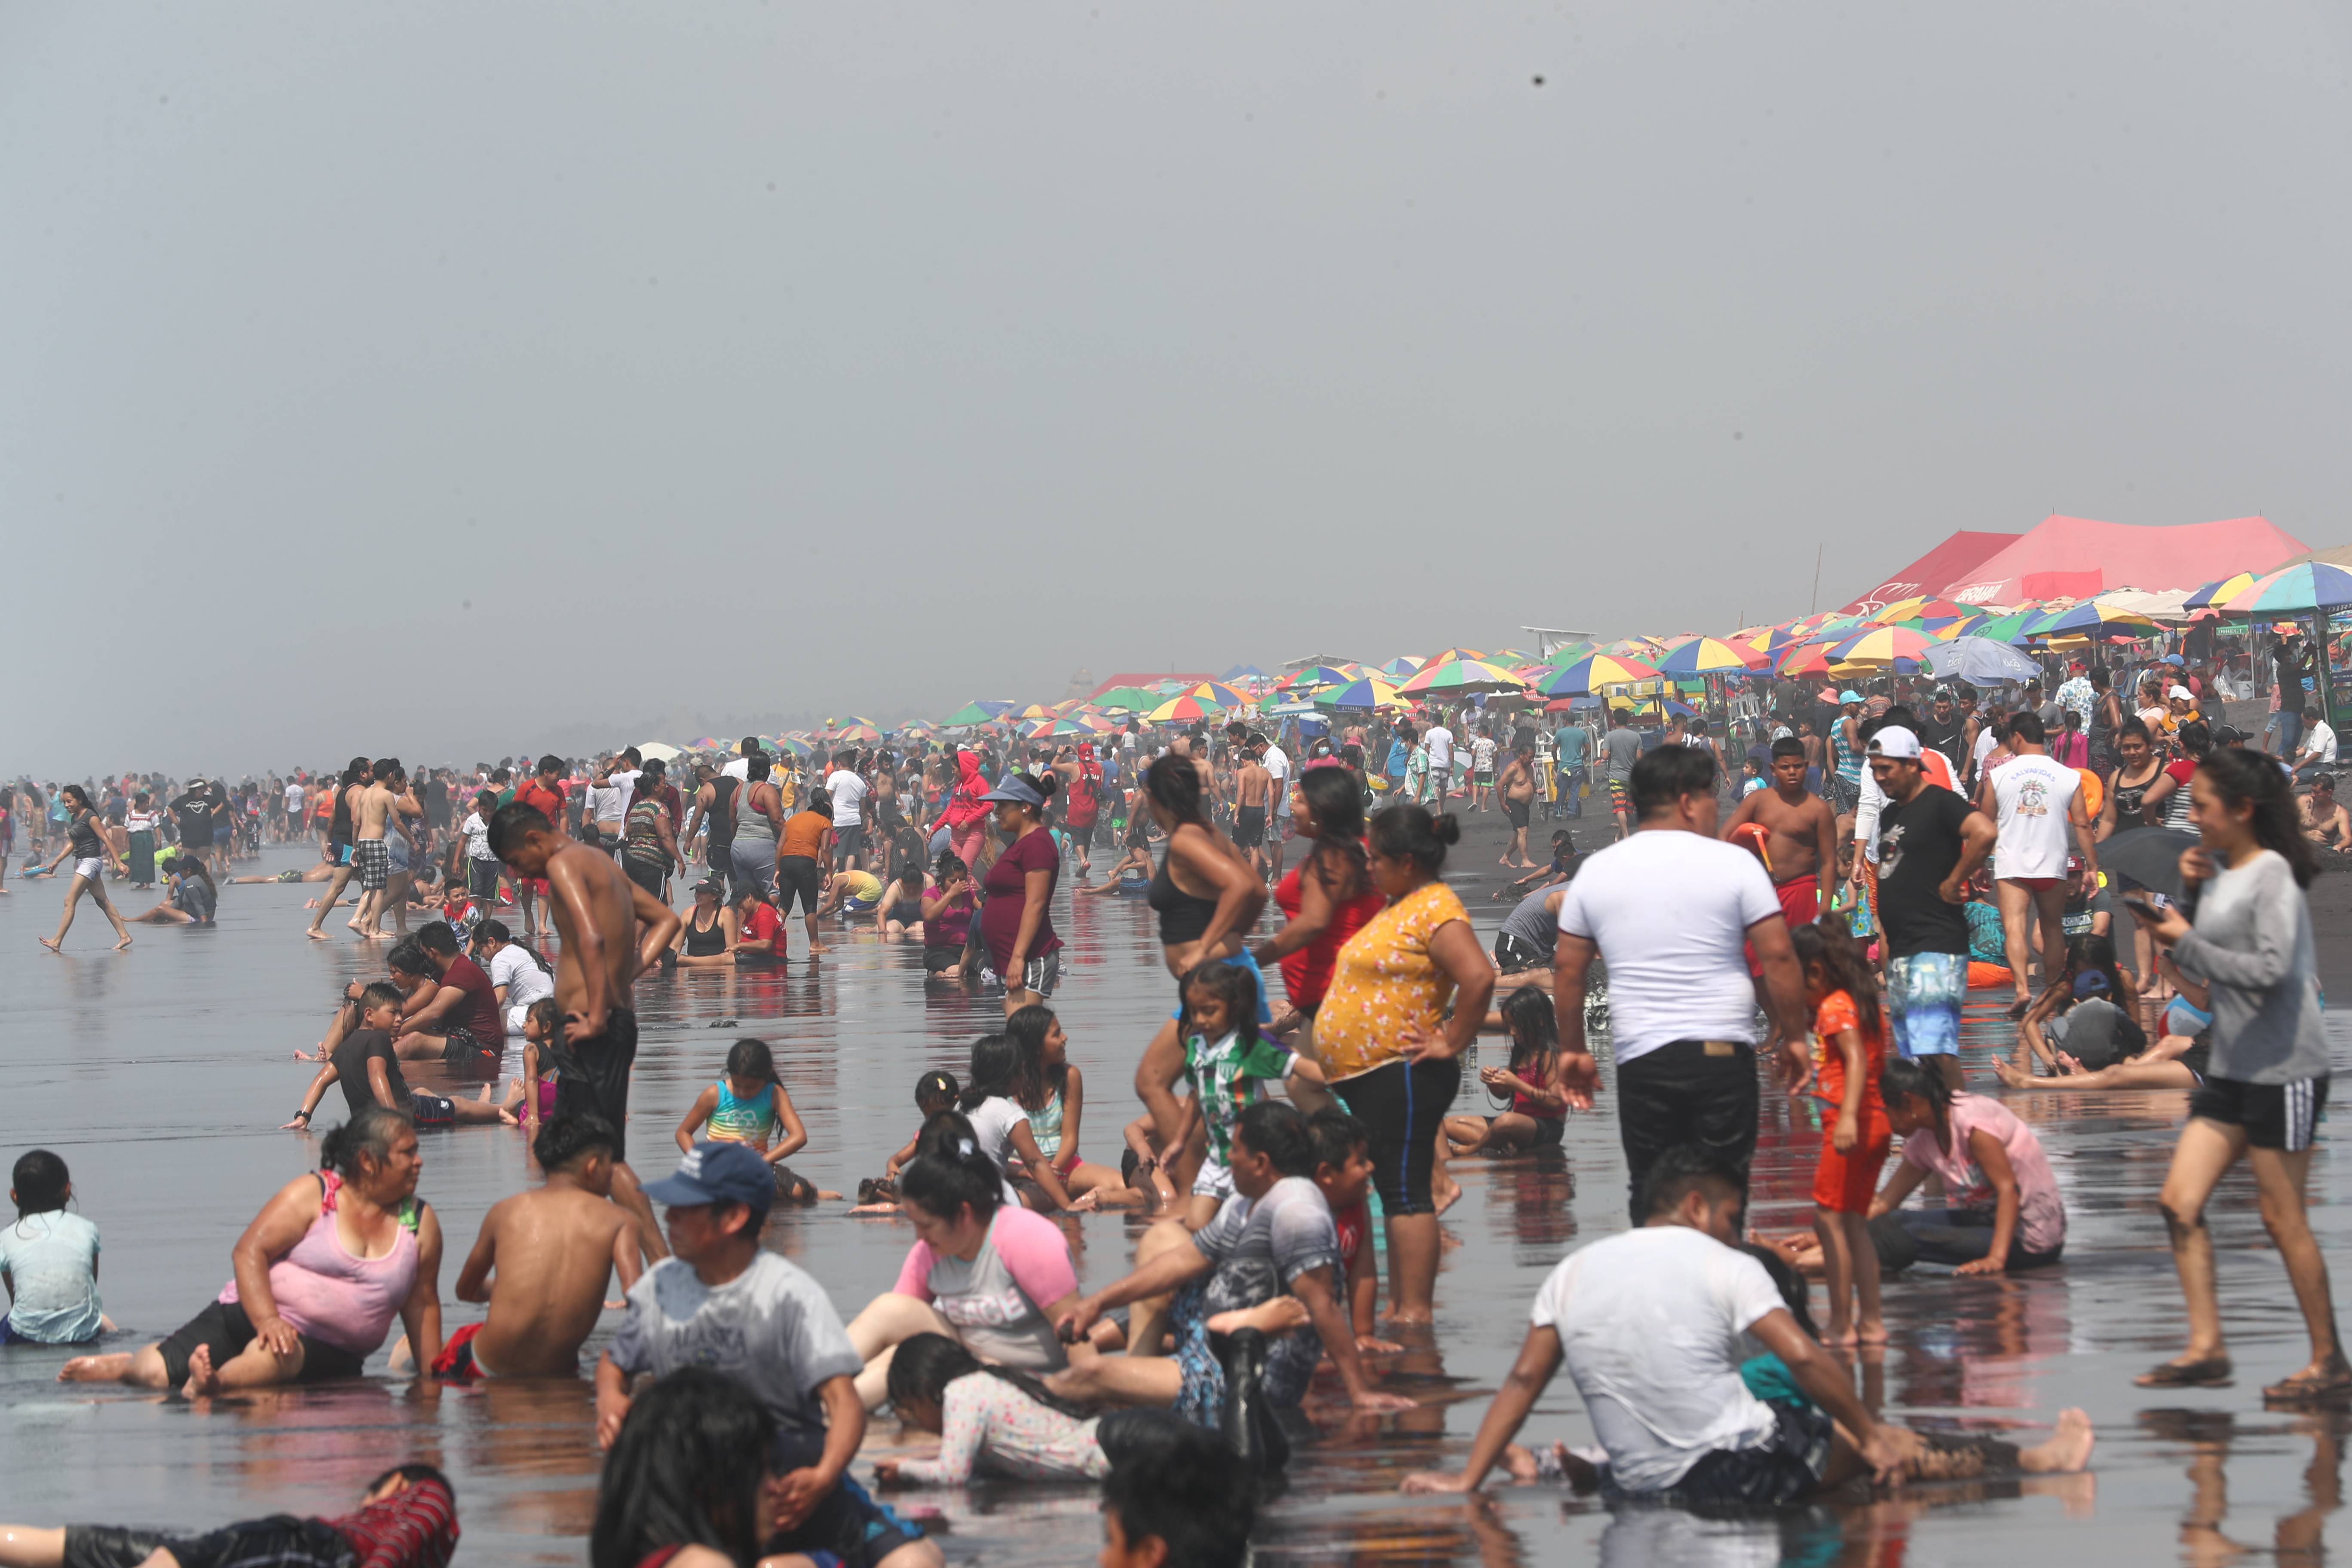 La aglomeración en las playas puede ser un foco de contagio del covid-19, según epidemiólogos. (Foto Prensa Libre: Fernando Cabrera)